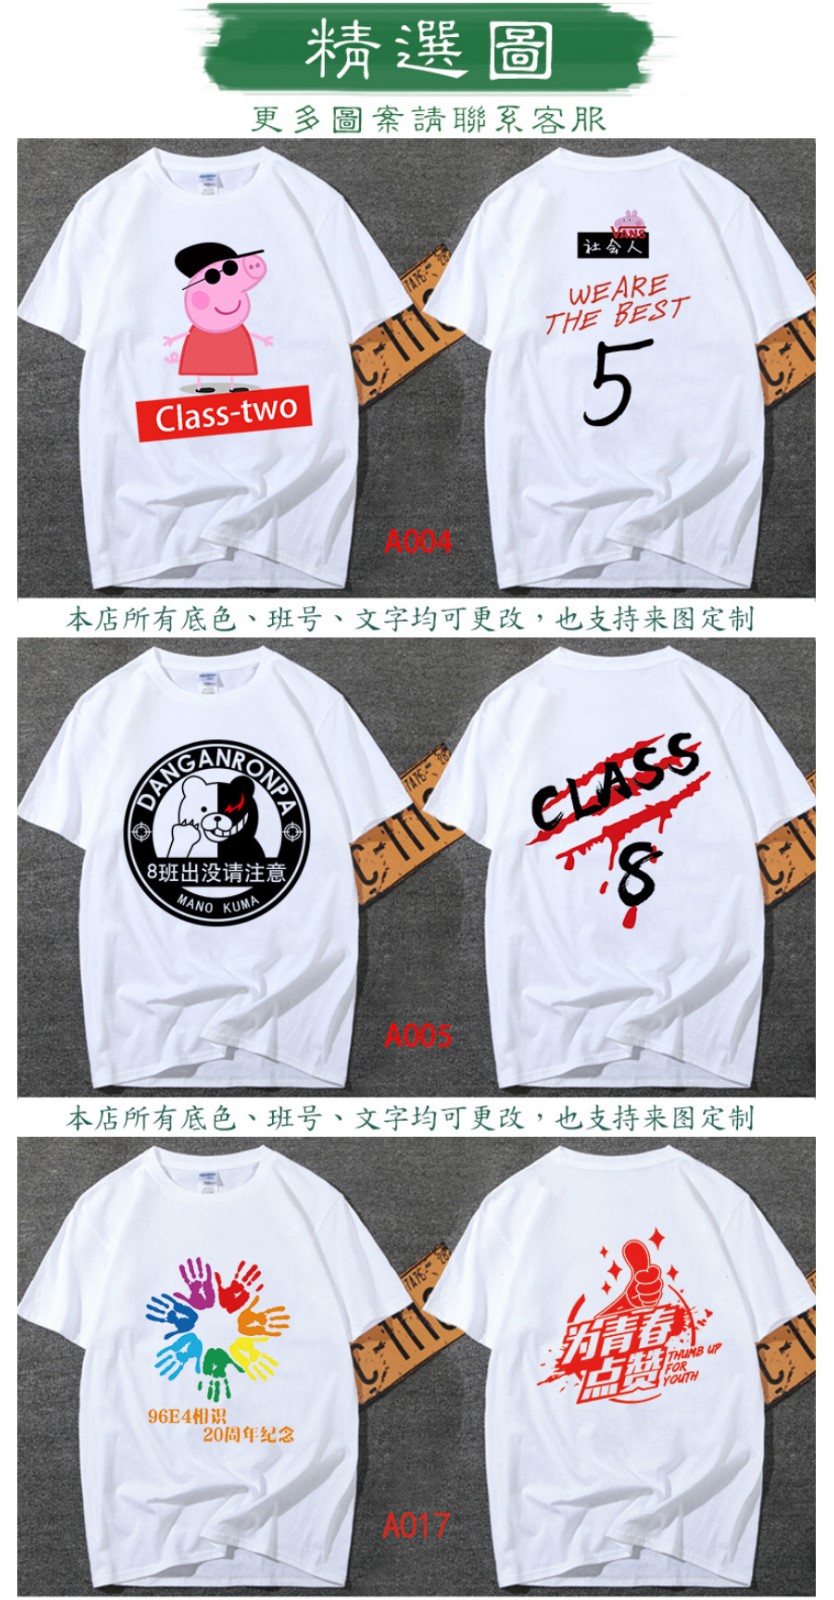 班服定制t恤同學聚會服裝廣告衫diy寬松短袖團隊運動會服印字logo(圖11)